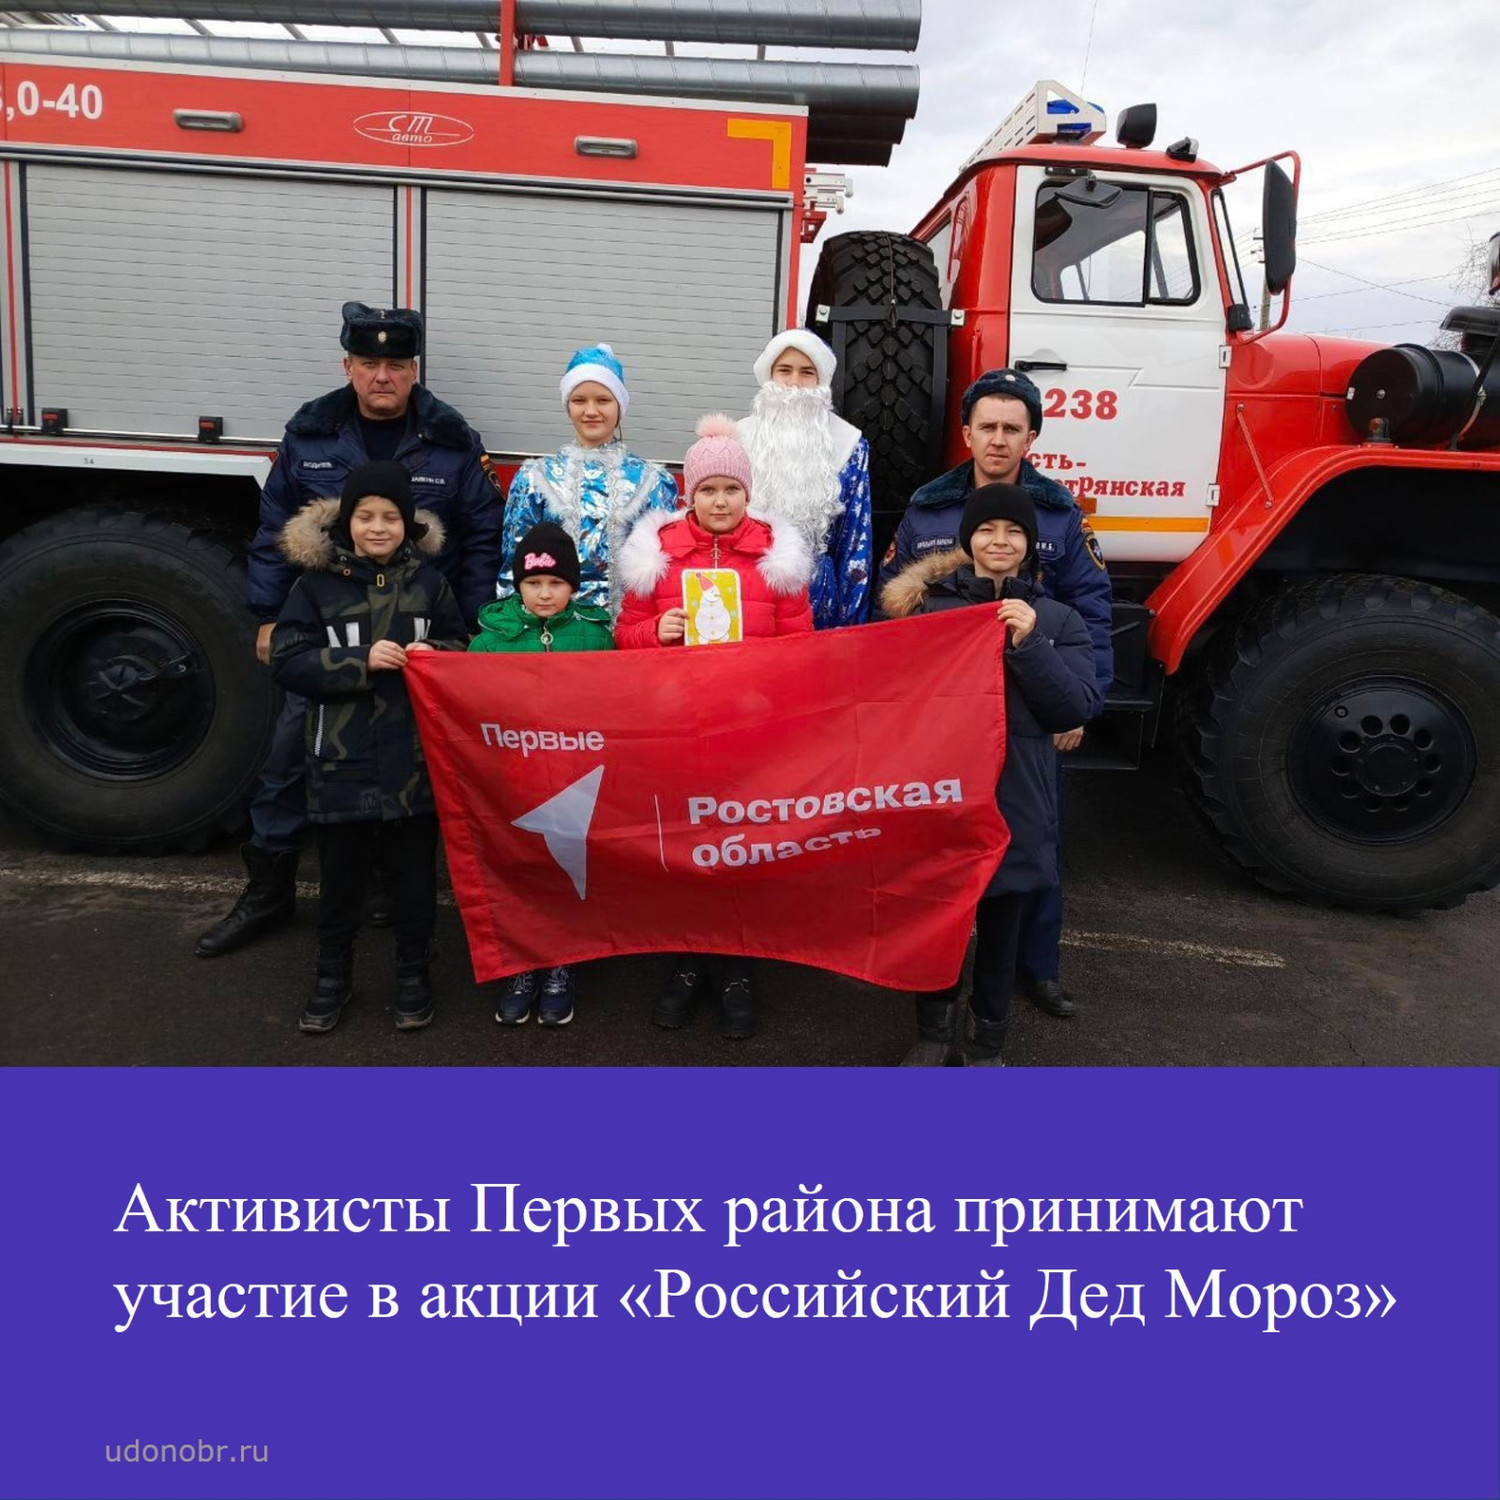 Активисты Первых района принимают участие в акции «Российский Дед Мороз»